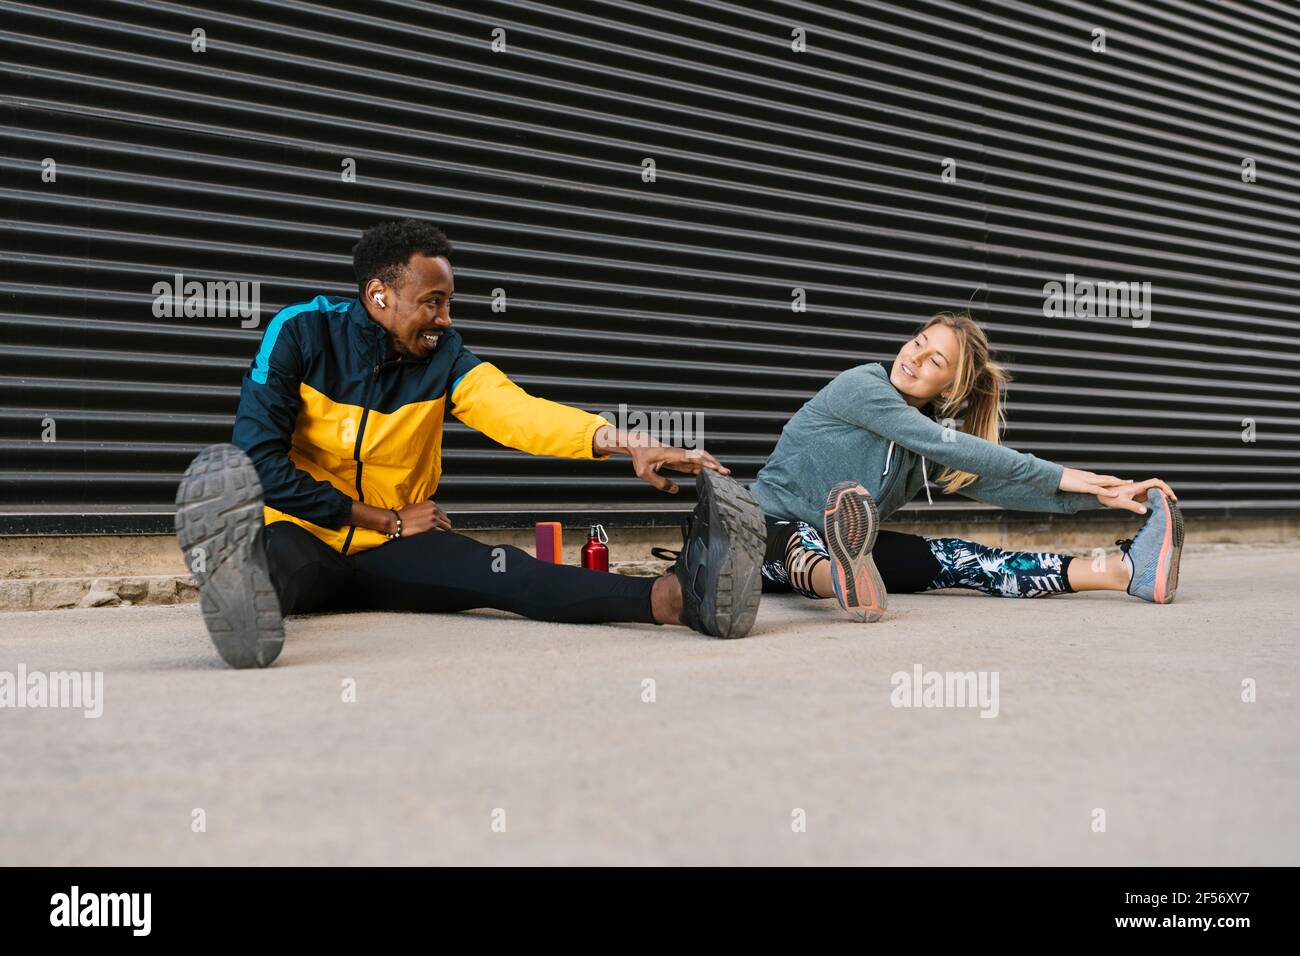 Männliche und weibliche Sportsperson tun Stretching-Übung während des Sitzens auf Boden gegen Rückwand Stockfoto